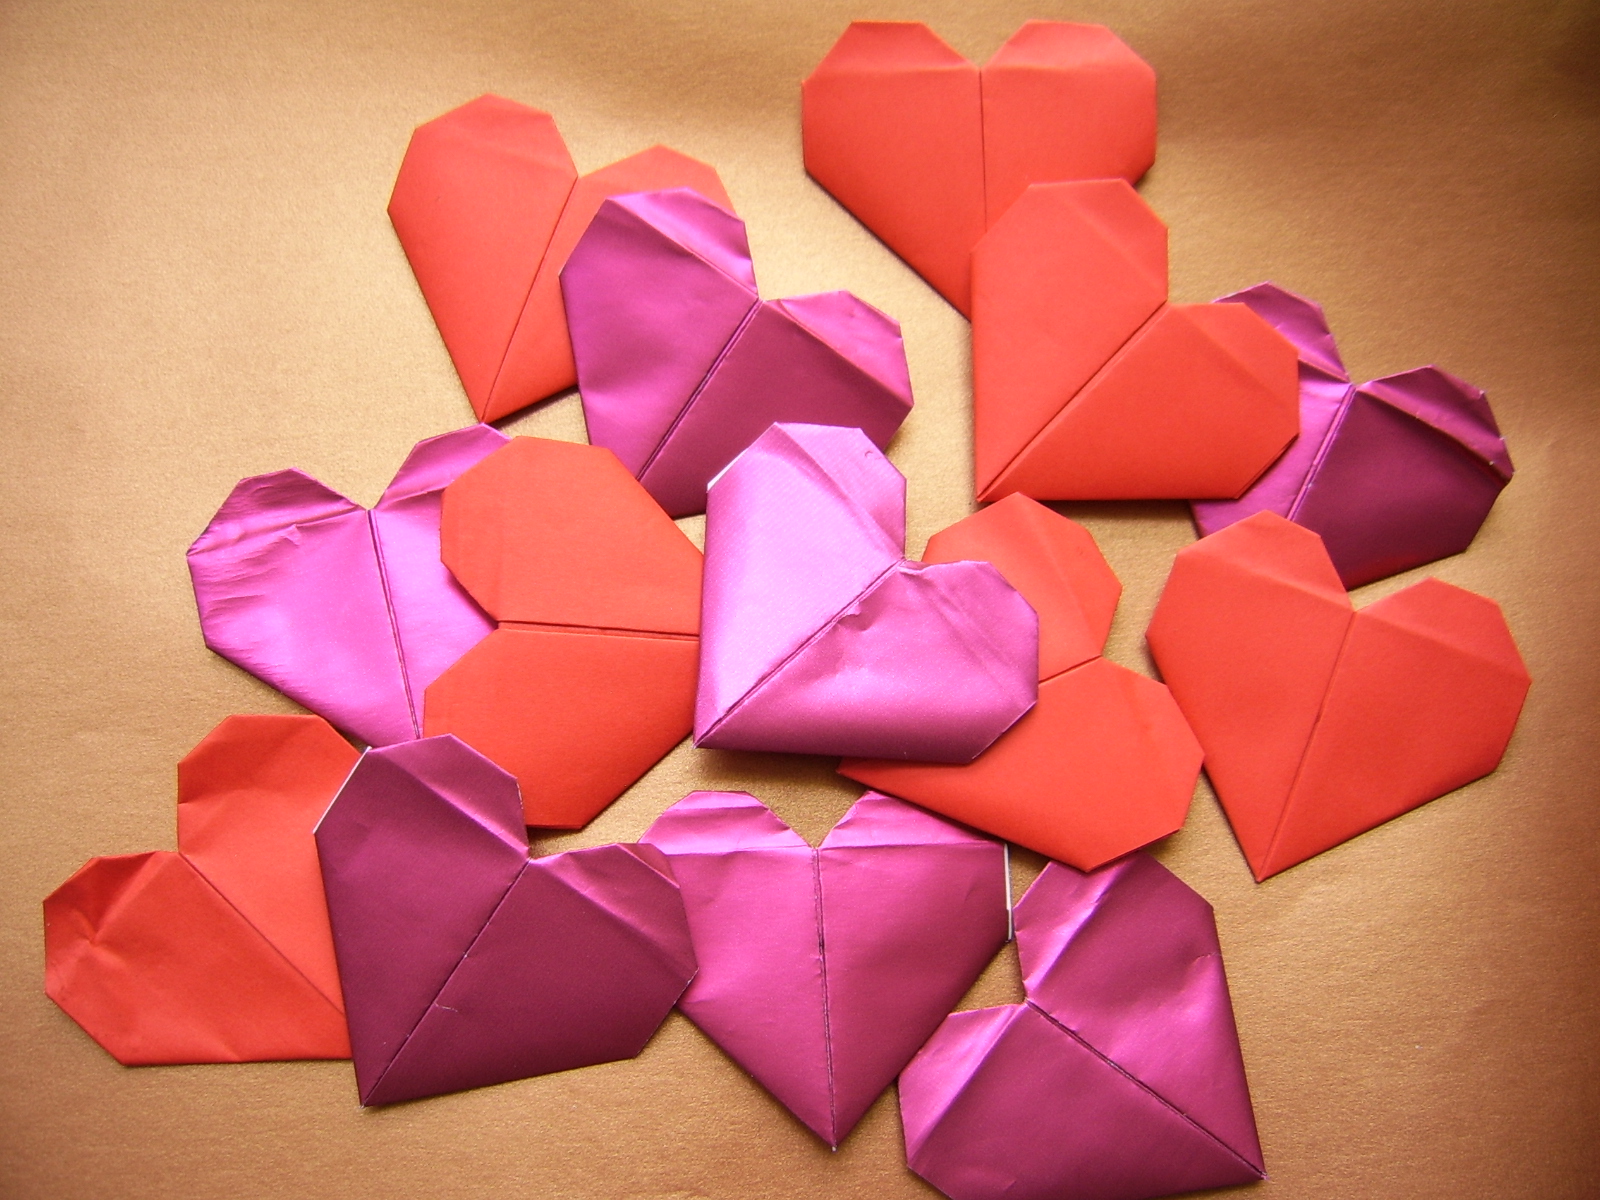 Serce - diagram origami